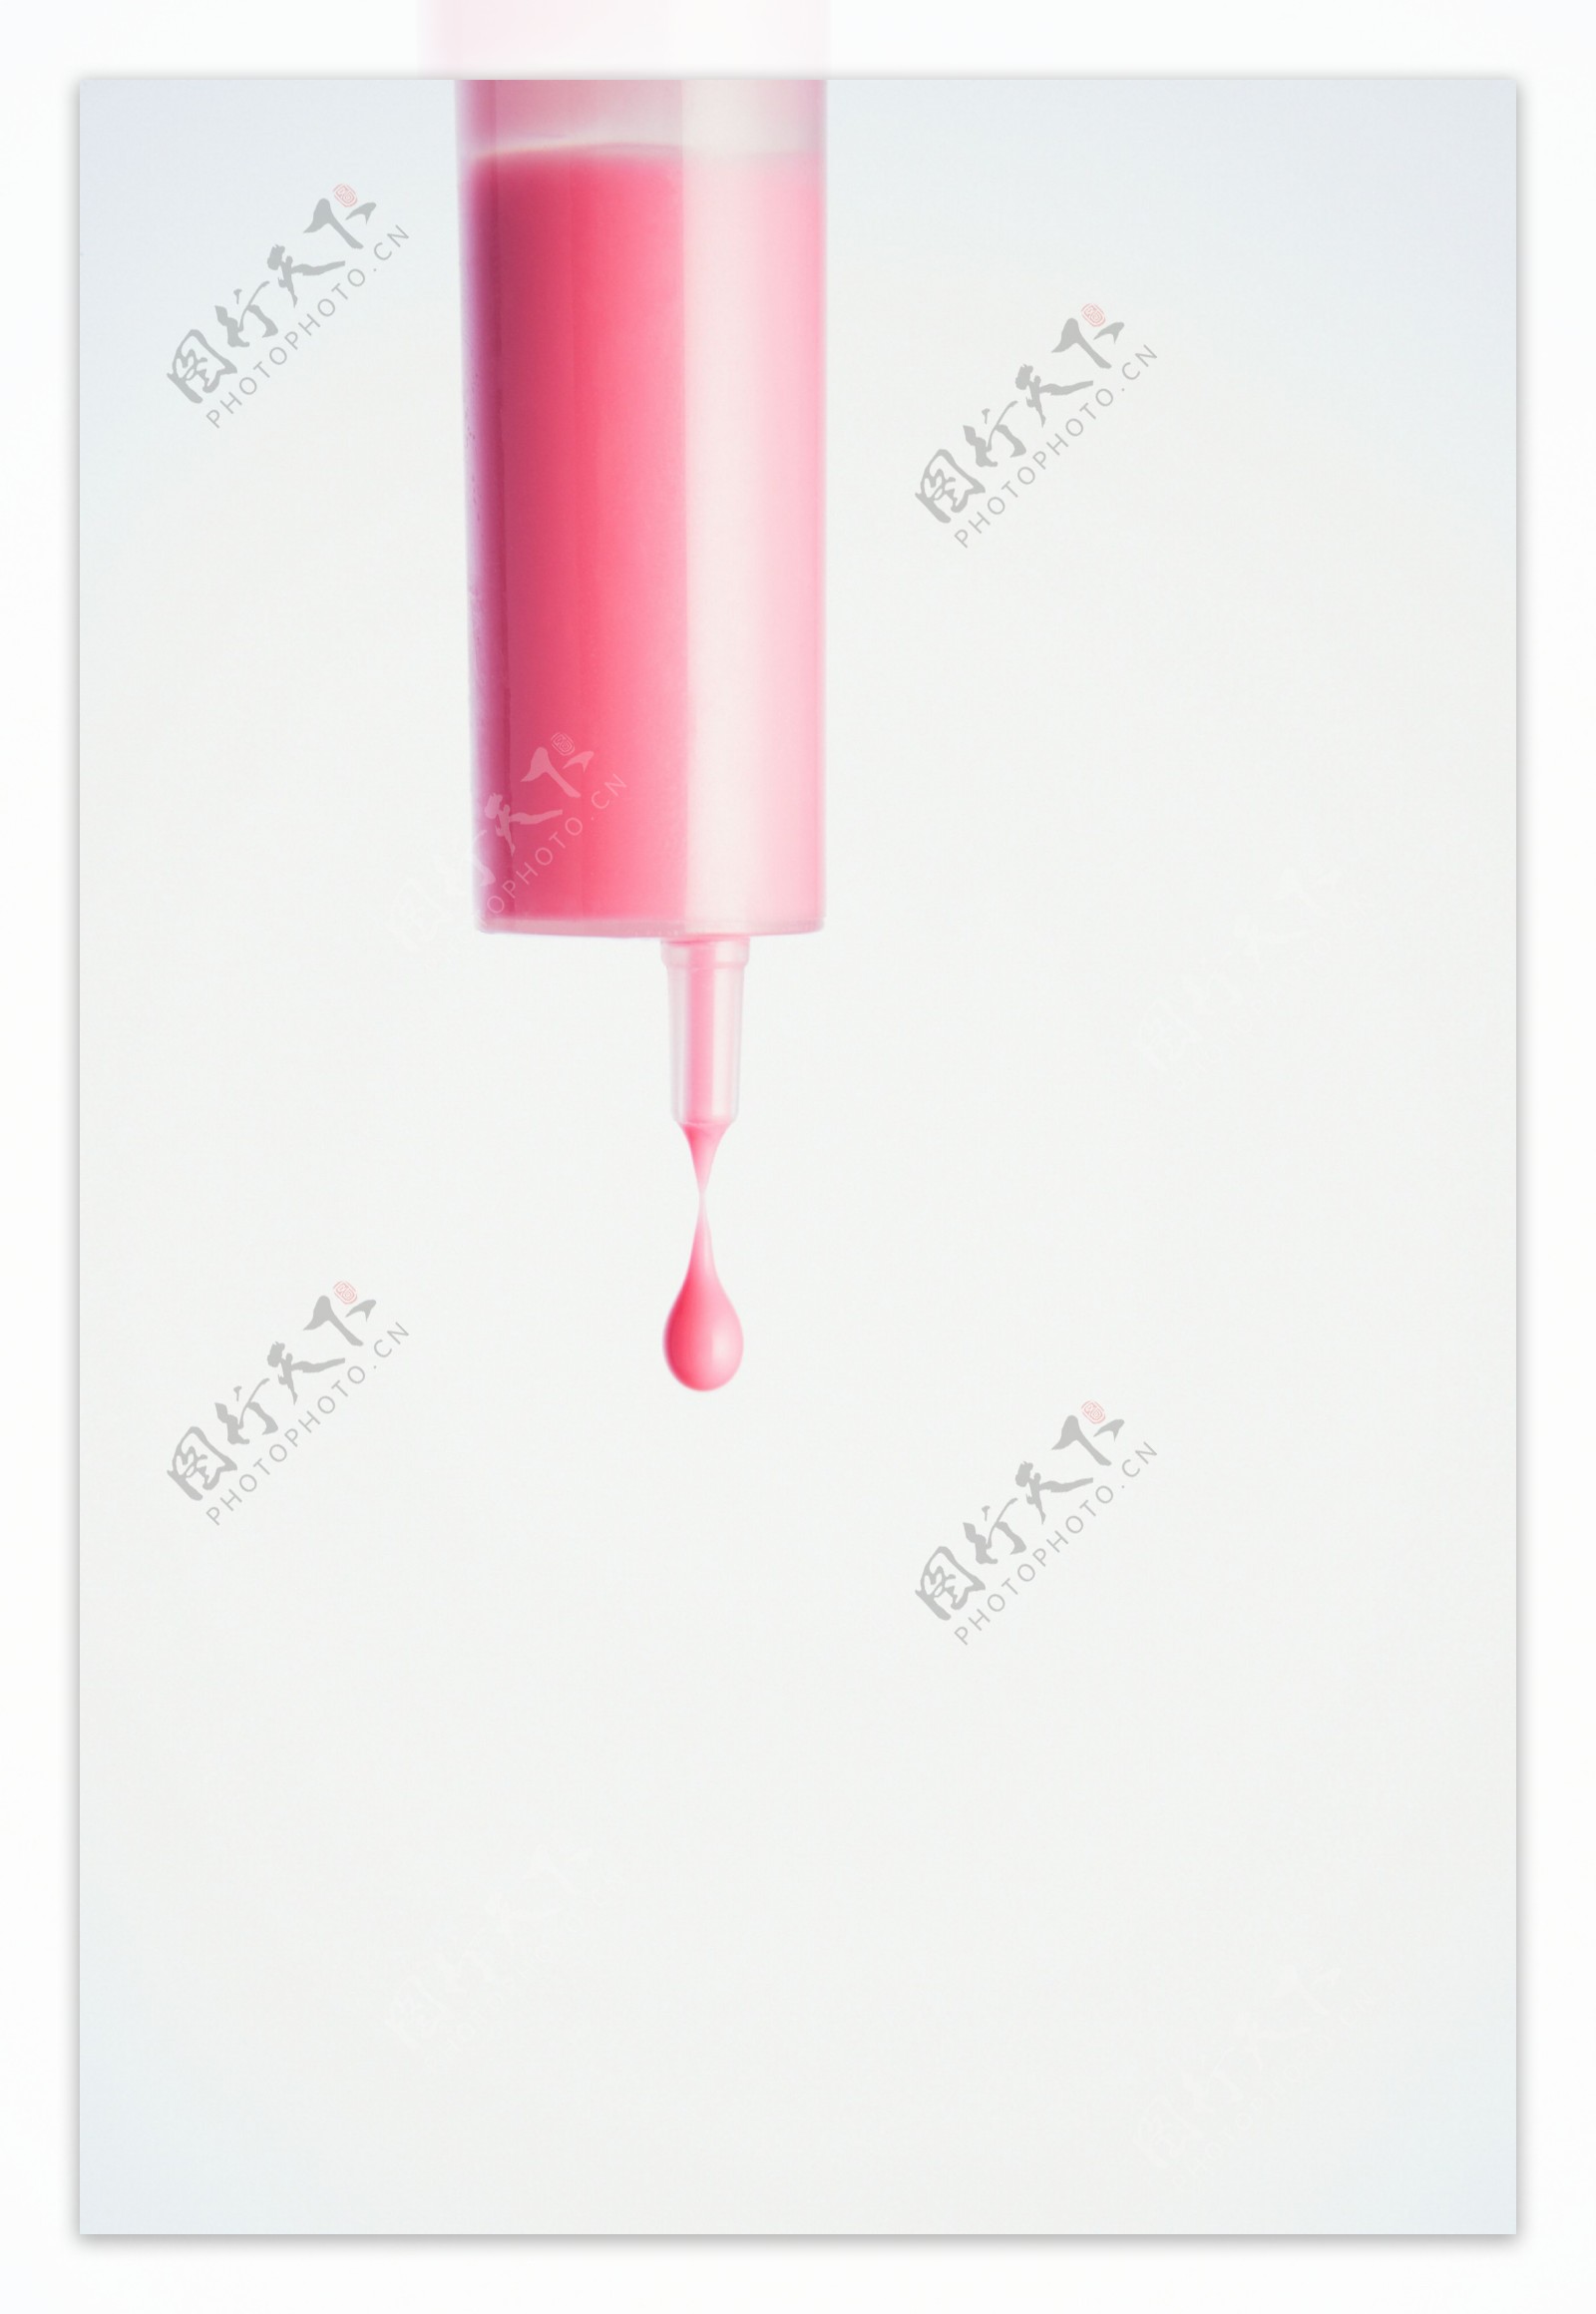 针管内的粉色液体图片